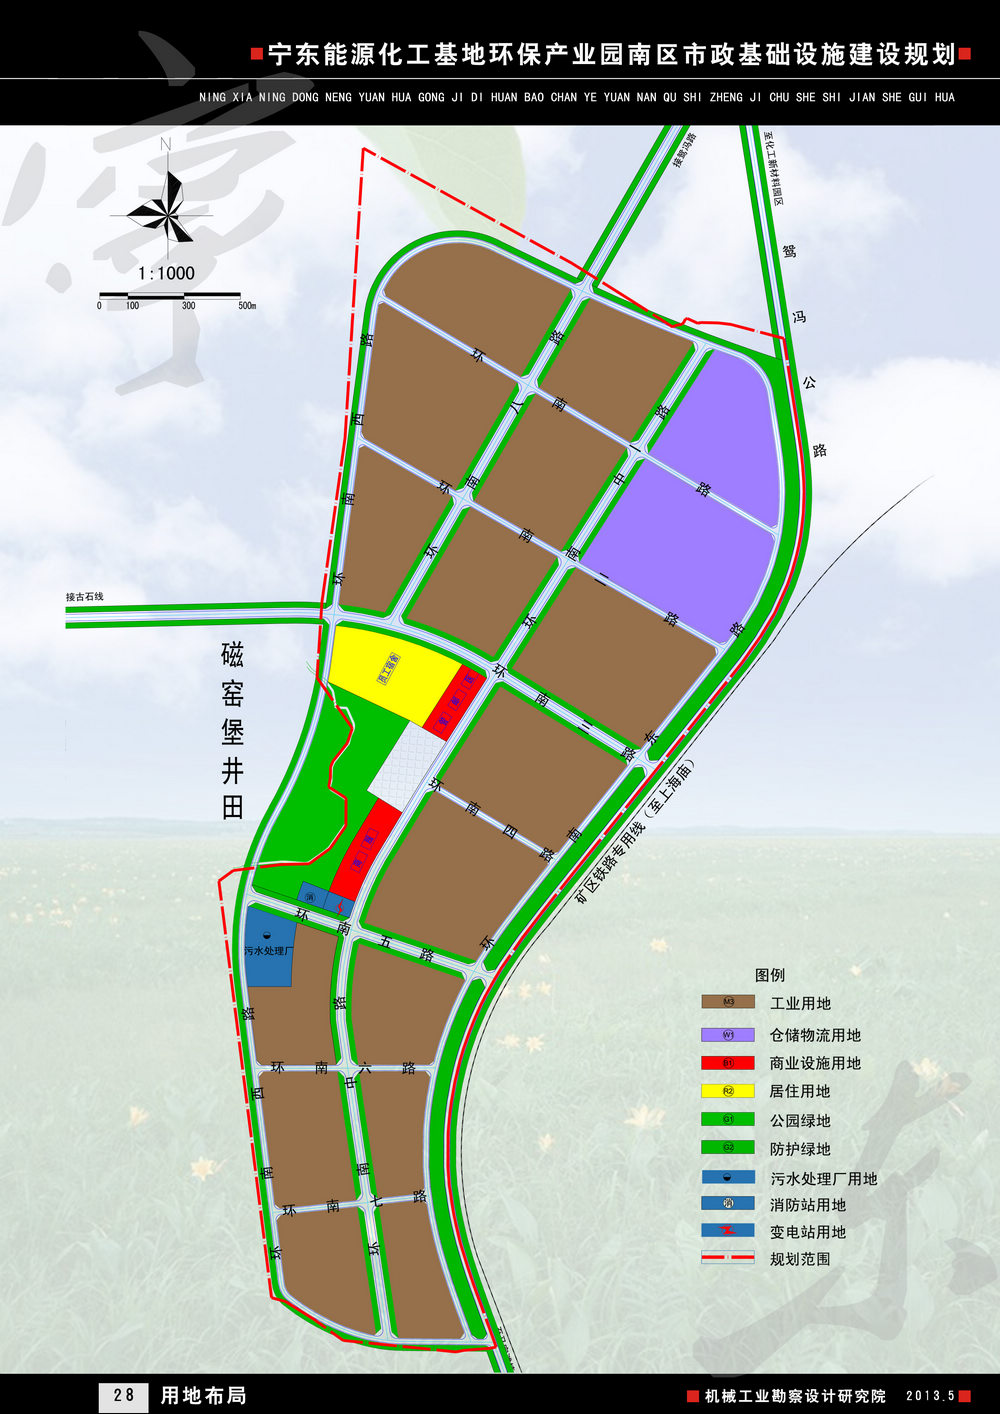 14宁东能源化工基地环保产业园南区市政基础设施建设规划